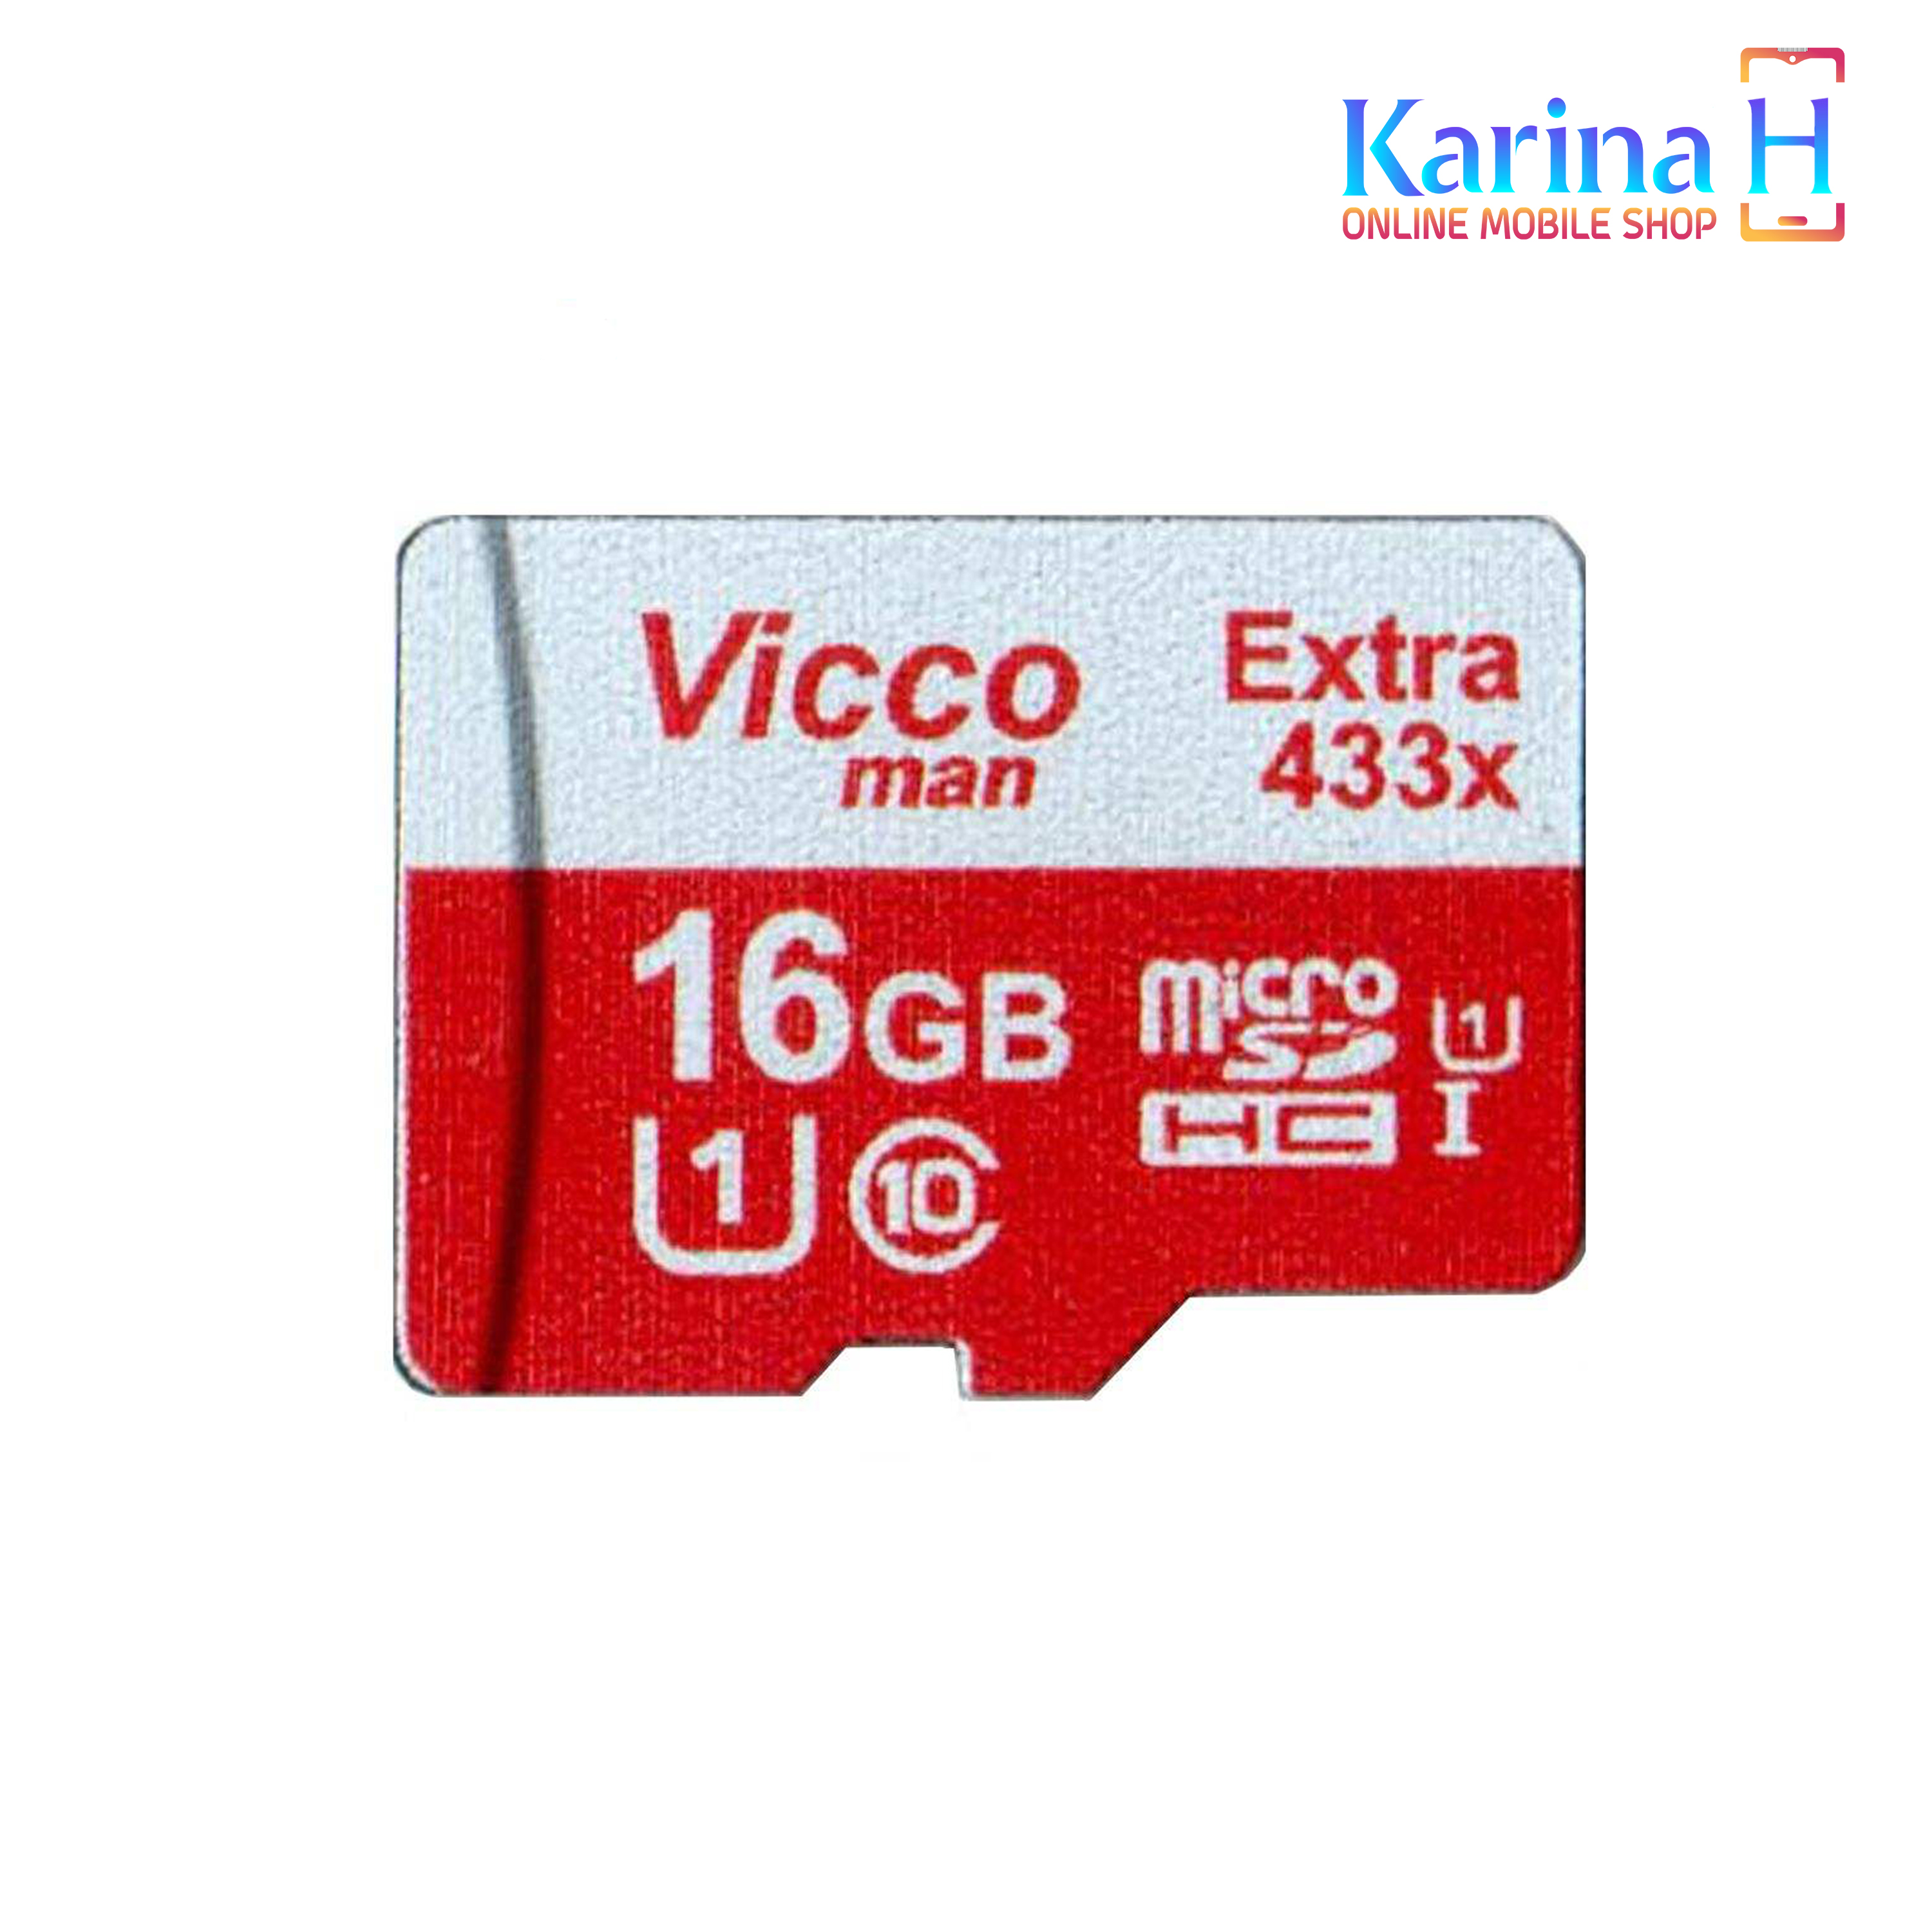 کارت حافظه microSDHC ویکومن مدل Extra 433X کلاس 10 ظرفیت 16 گیگابایت